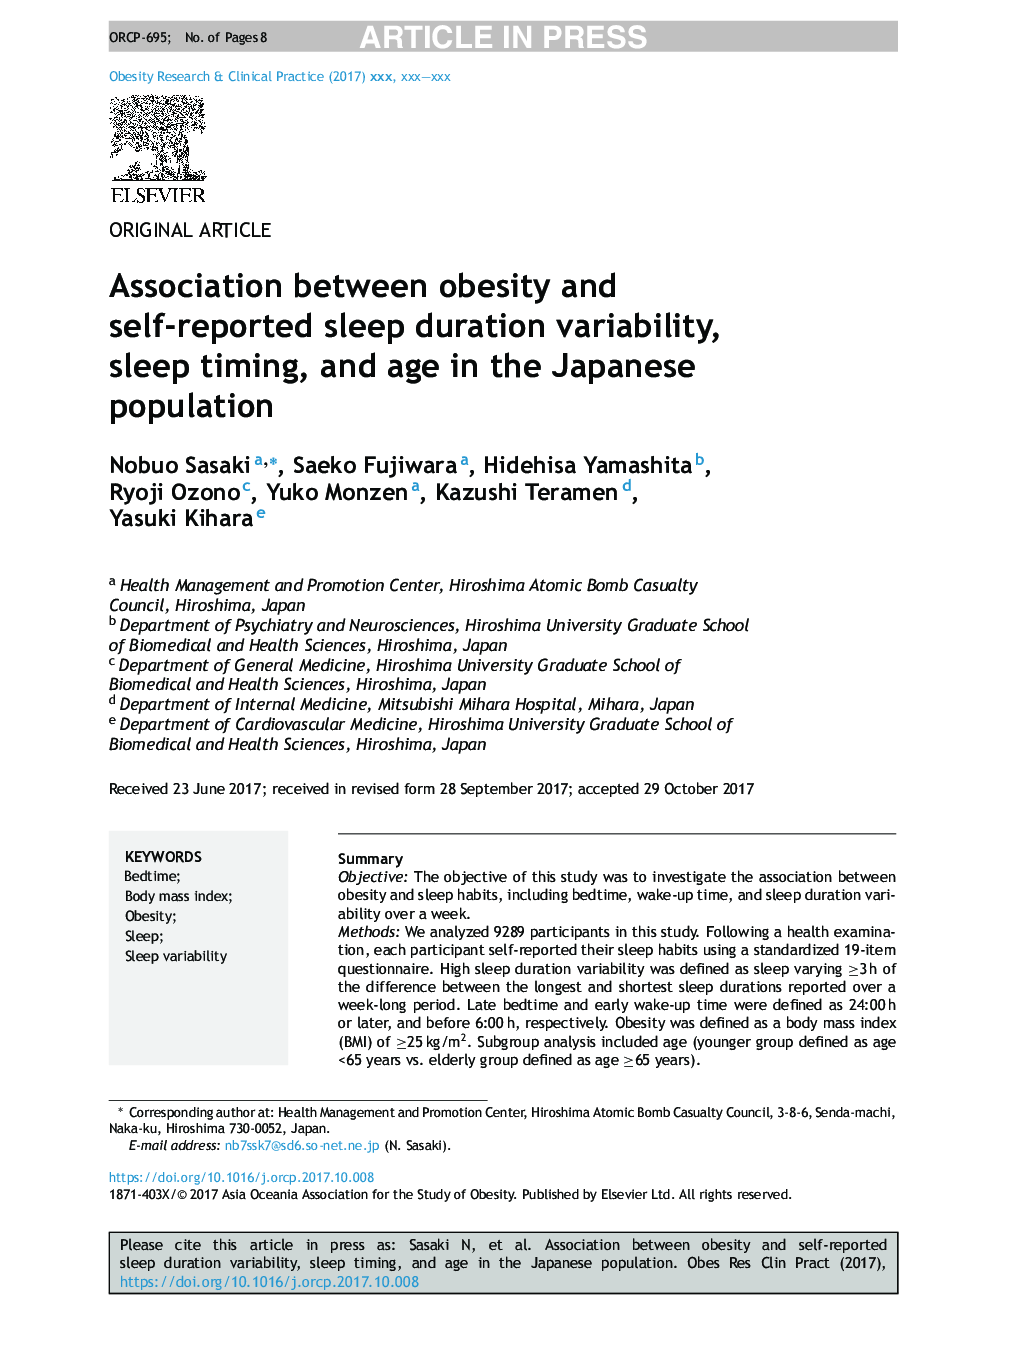 ارتباط بین چاقی و تغییرات مدت خواب خود، زمان خواب و سن در جمعیت ژاپن 